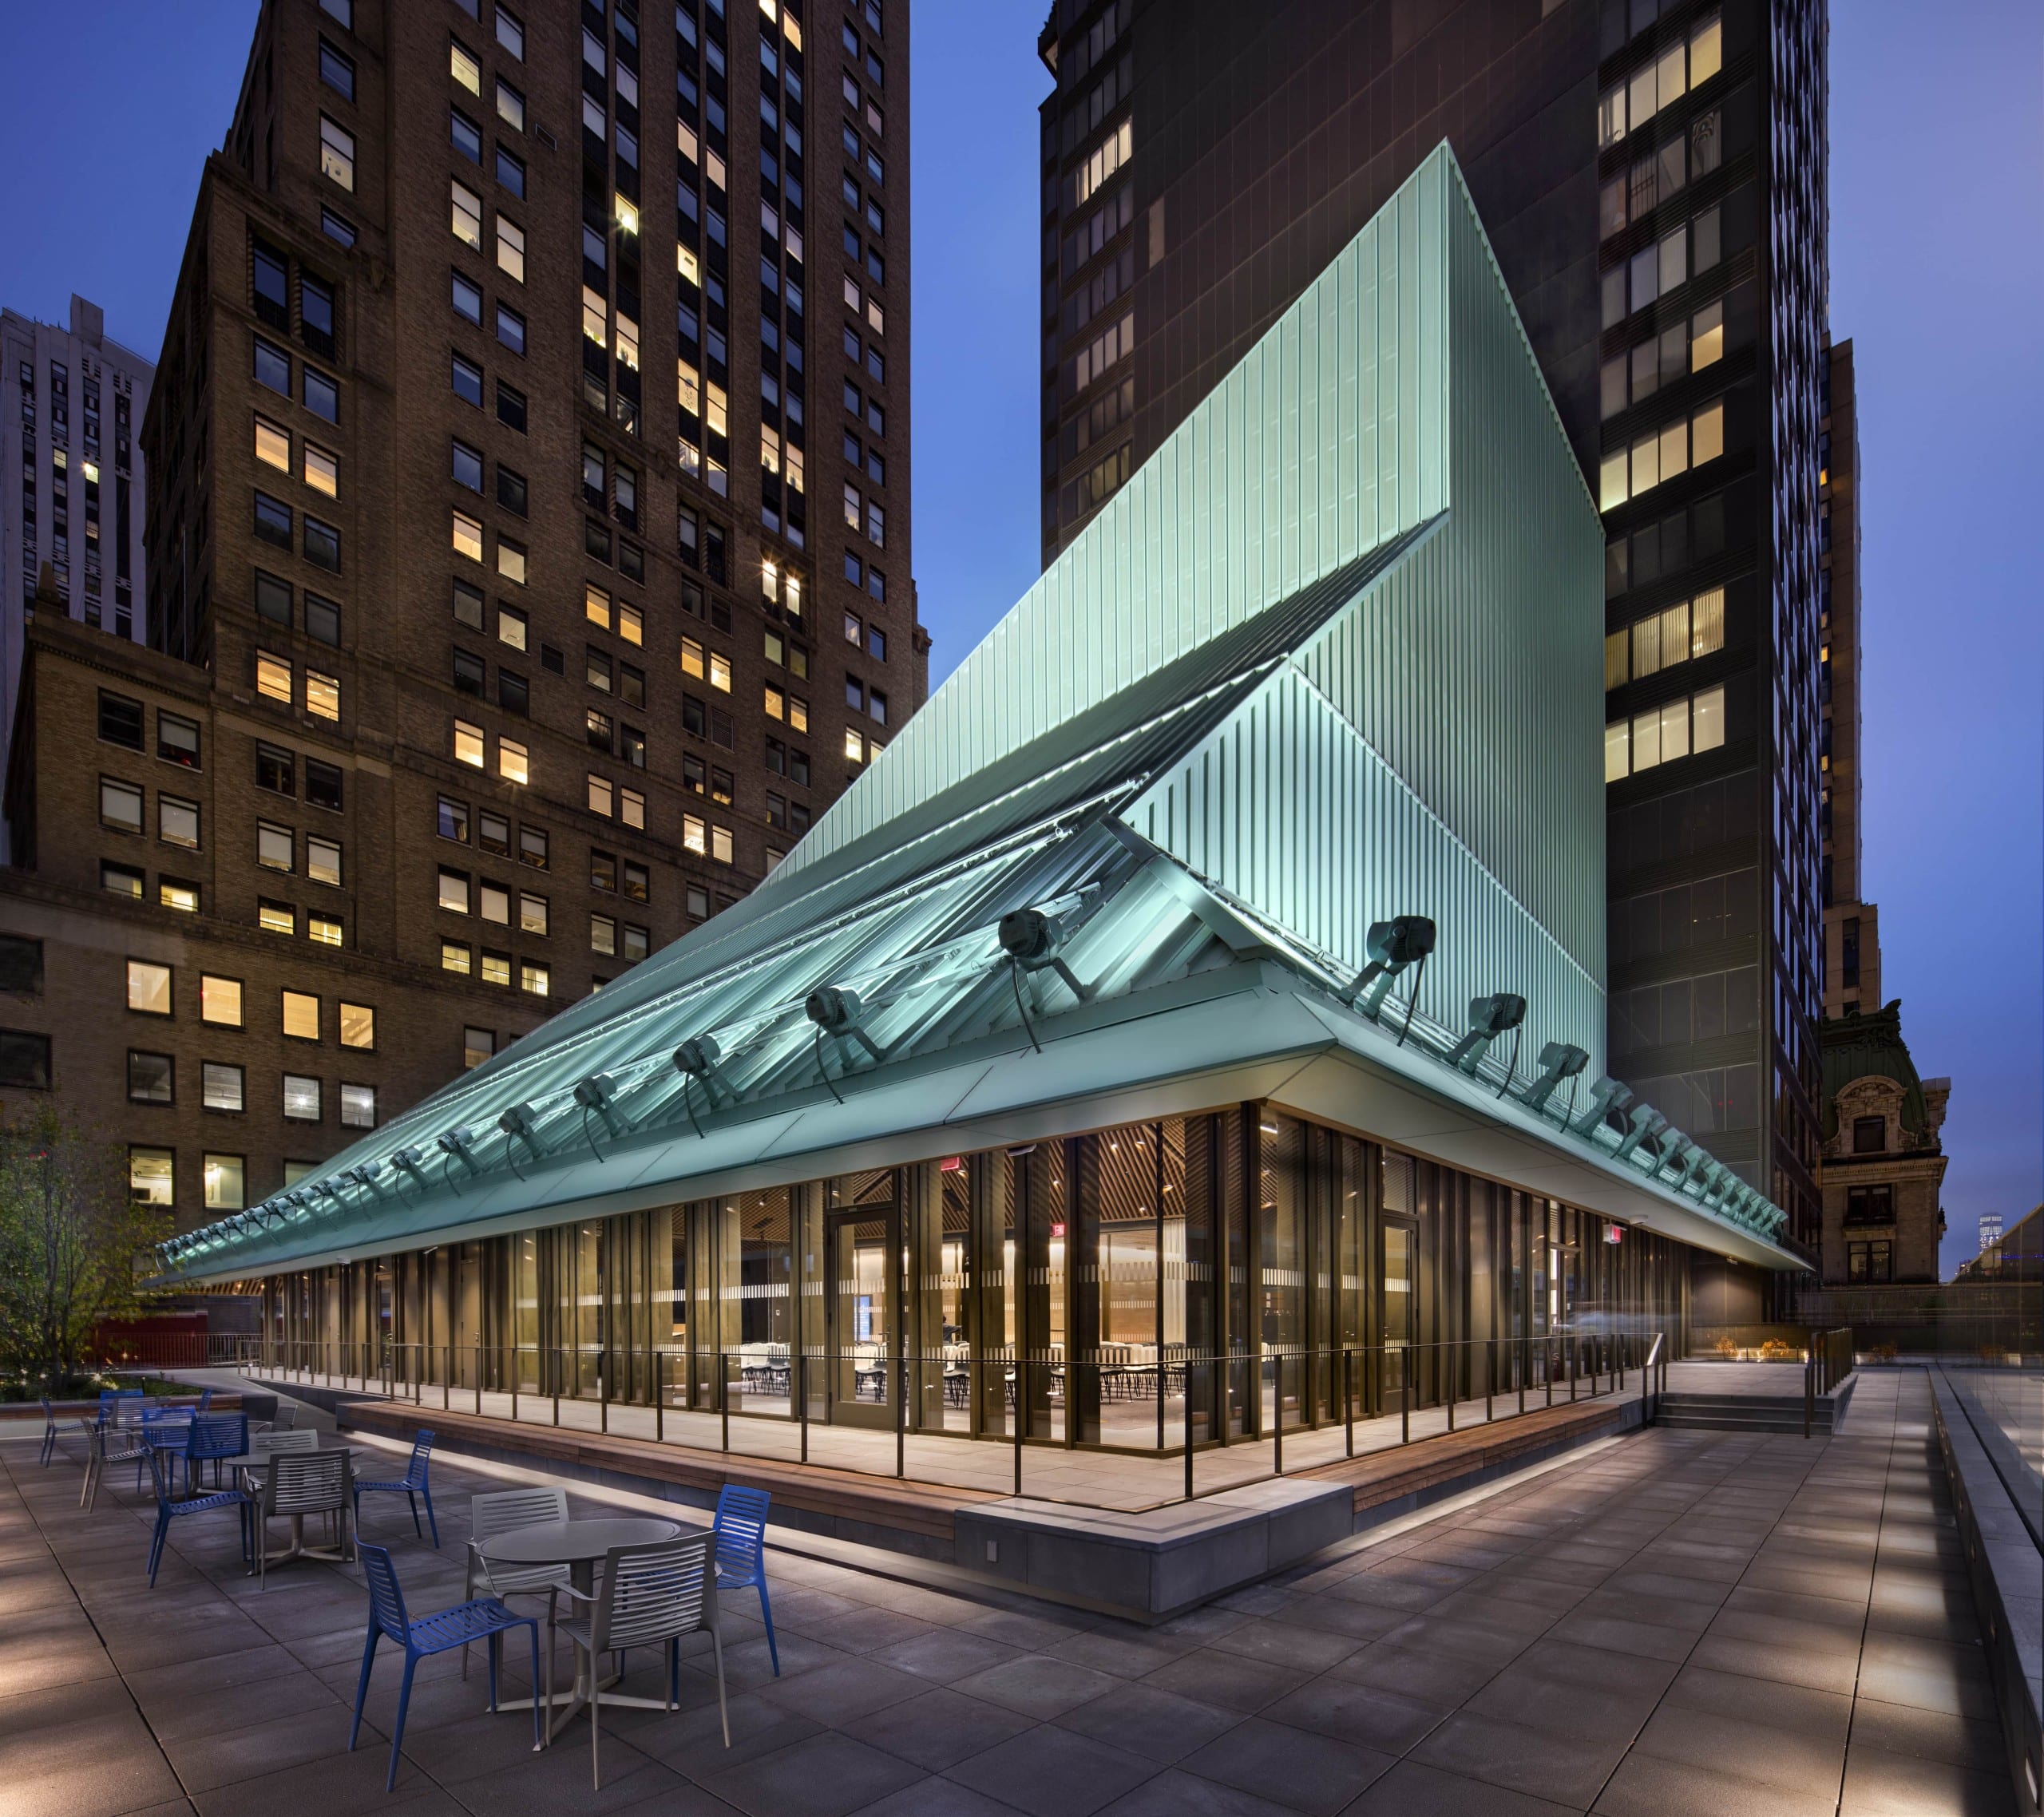 Das Dach der neuen Stavros Niarchos Foundation Library in New York erinnert an einen Zauberhut. Foto: John Bartelstone